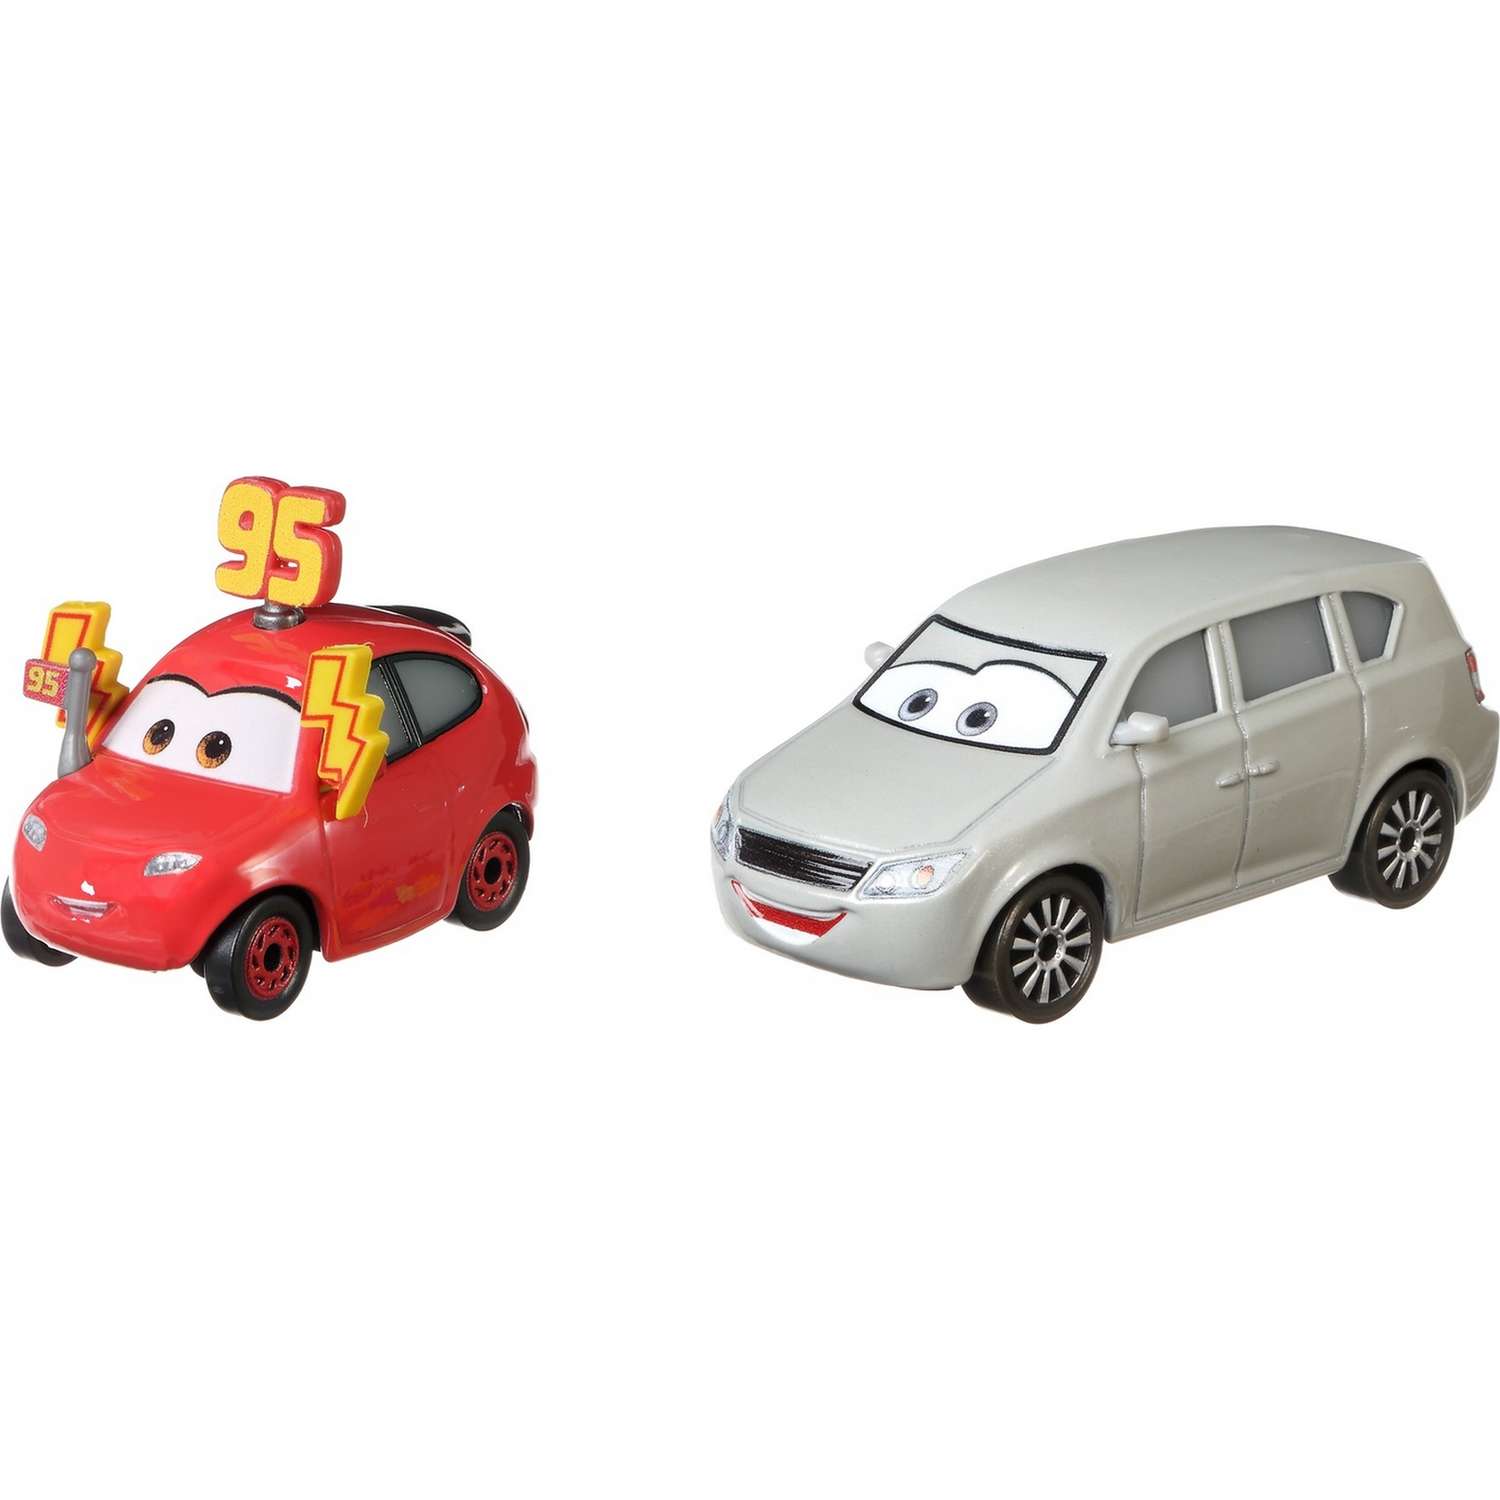 Набор машинок Cars Герои мультфильмов Мэдди МакГаз и Мелисса Бернабрейк GCK23 DXV99 - фото 1